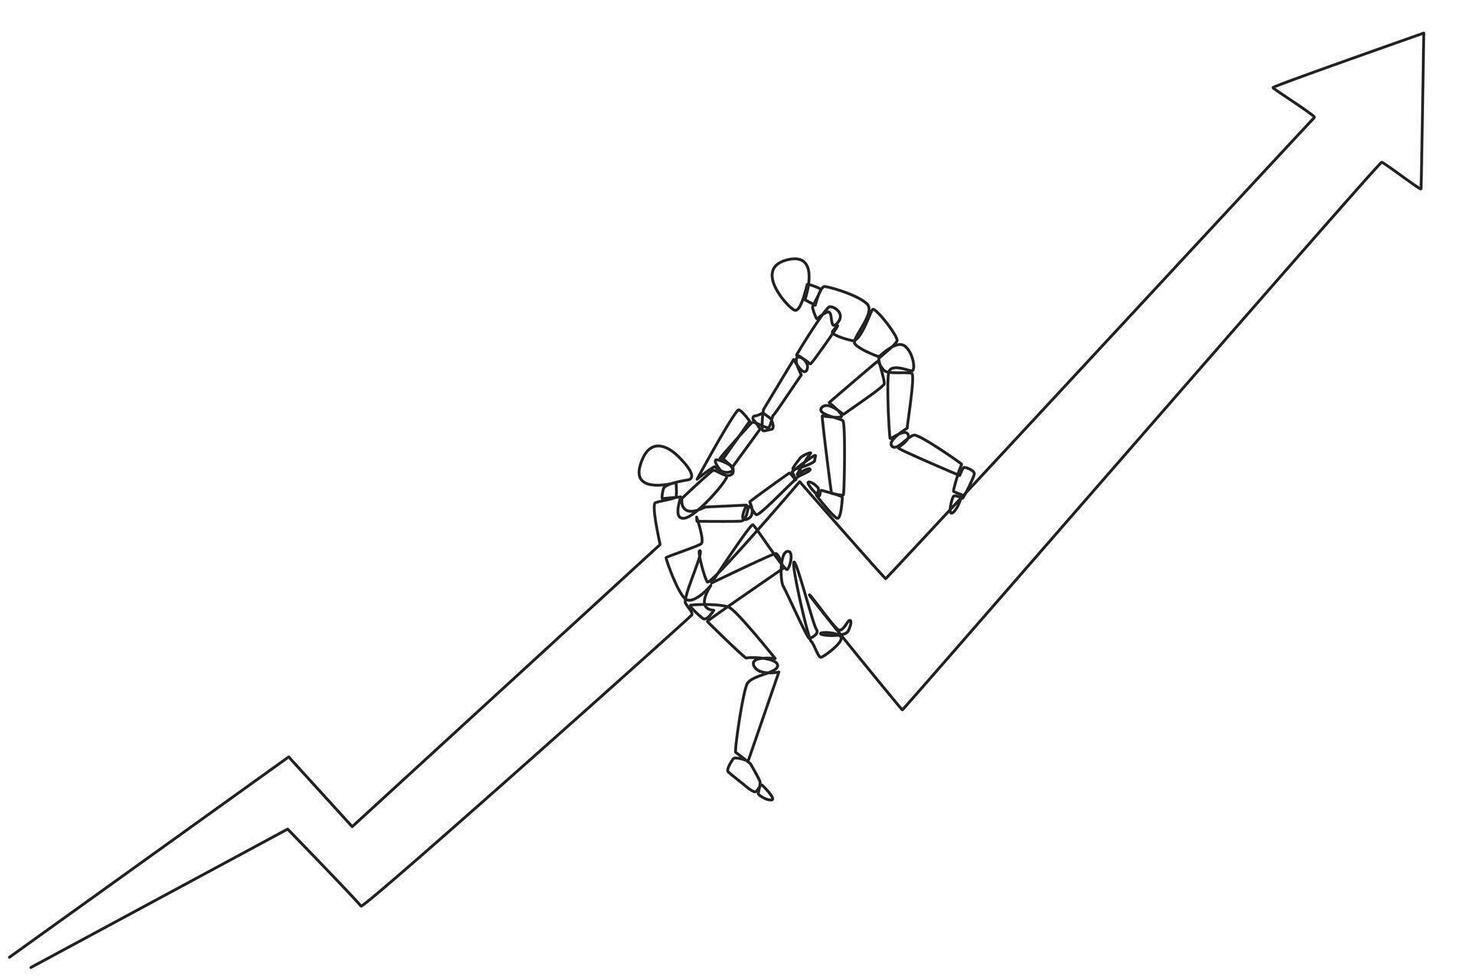 single doorlopend lijn tekening slim robot helpt collega naar klimt de groot stijgende lijn pijl symbool. helpen elk andere naar bereiken bevredigend doelen. toenemen samen. een lijn ontwerp illustratie vector